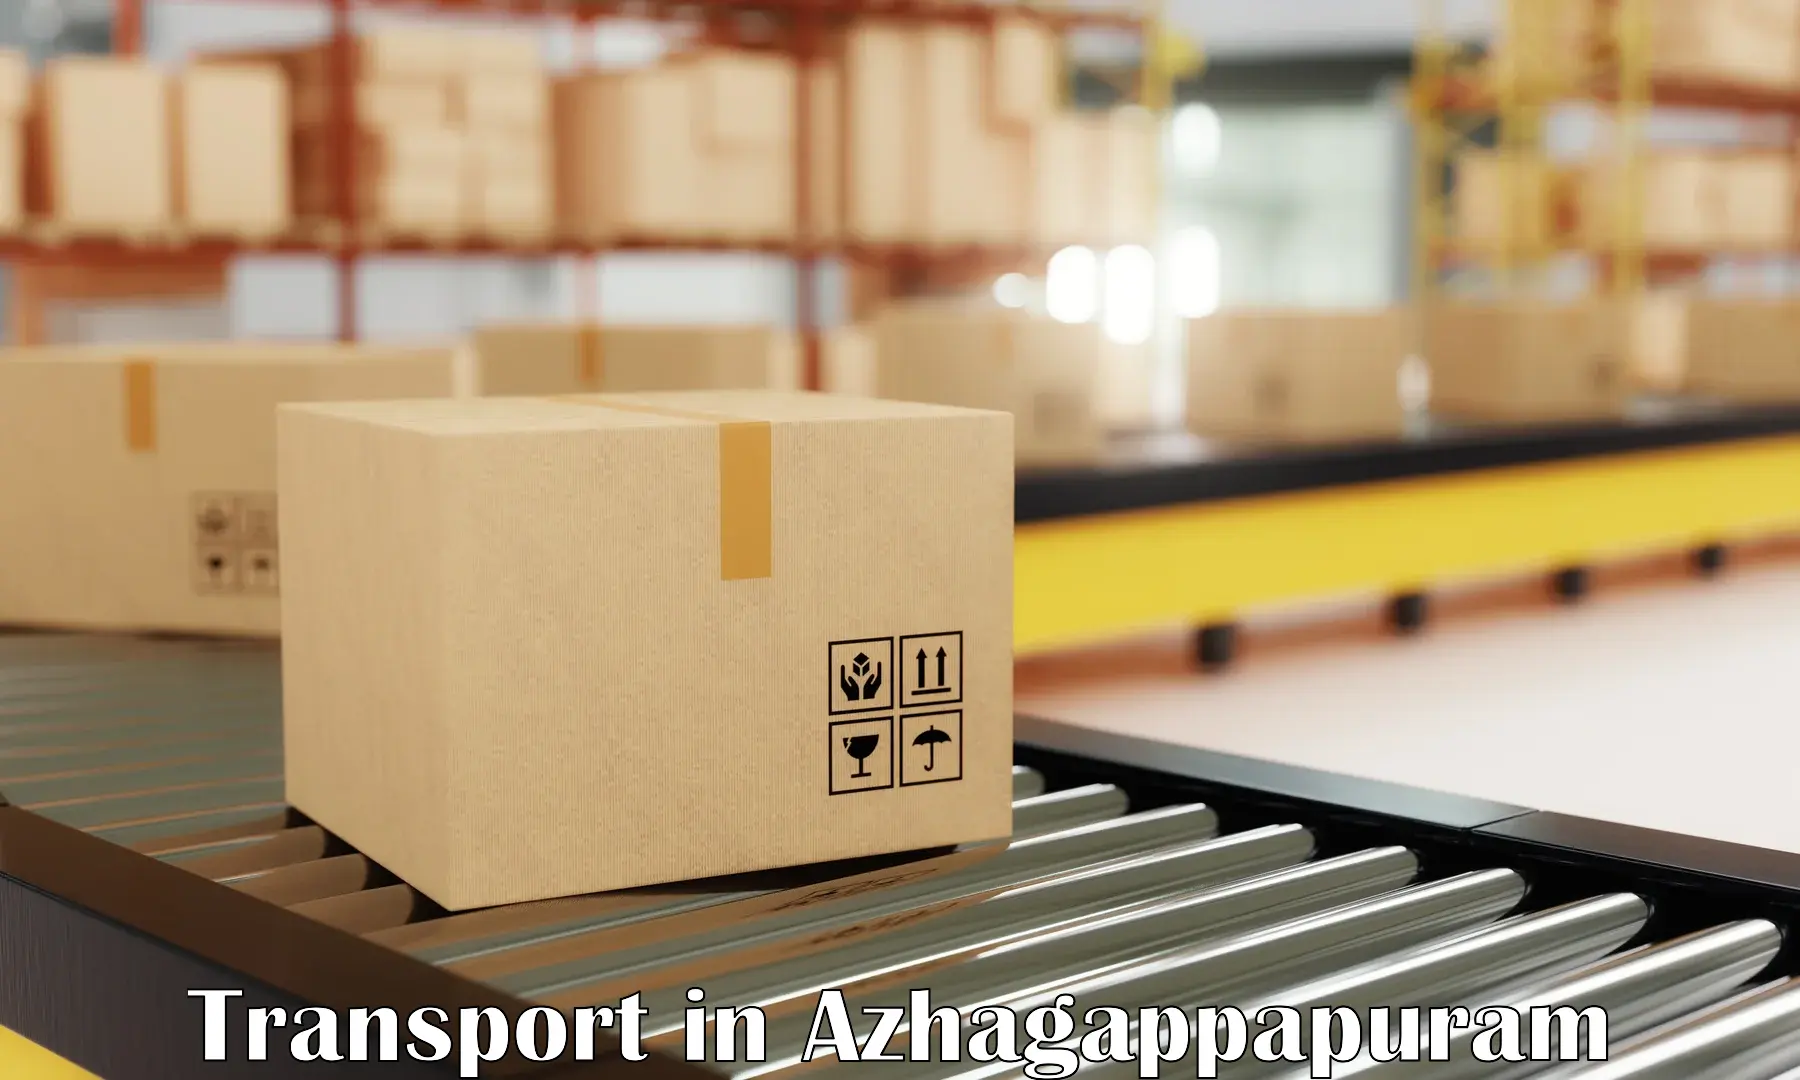 Container transport service in Azhagappapuram